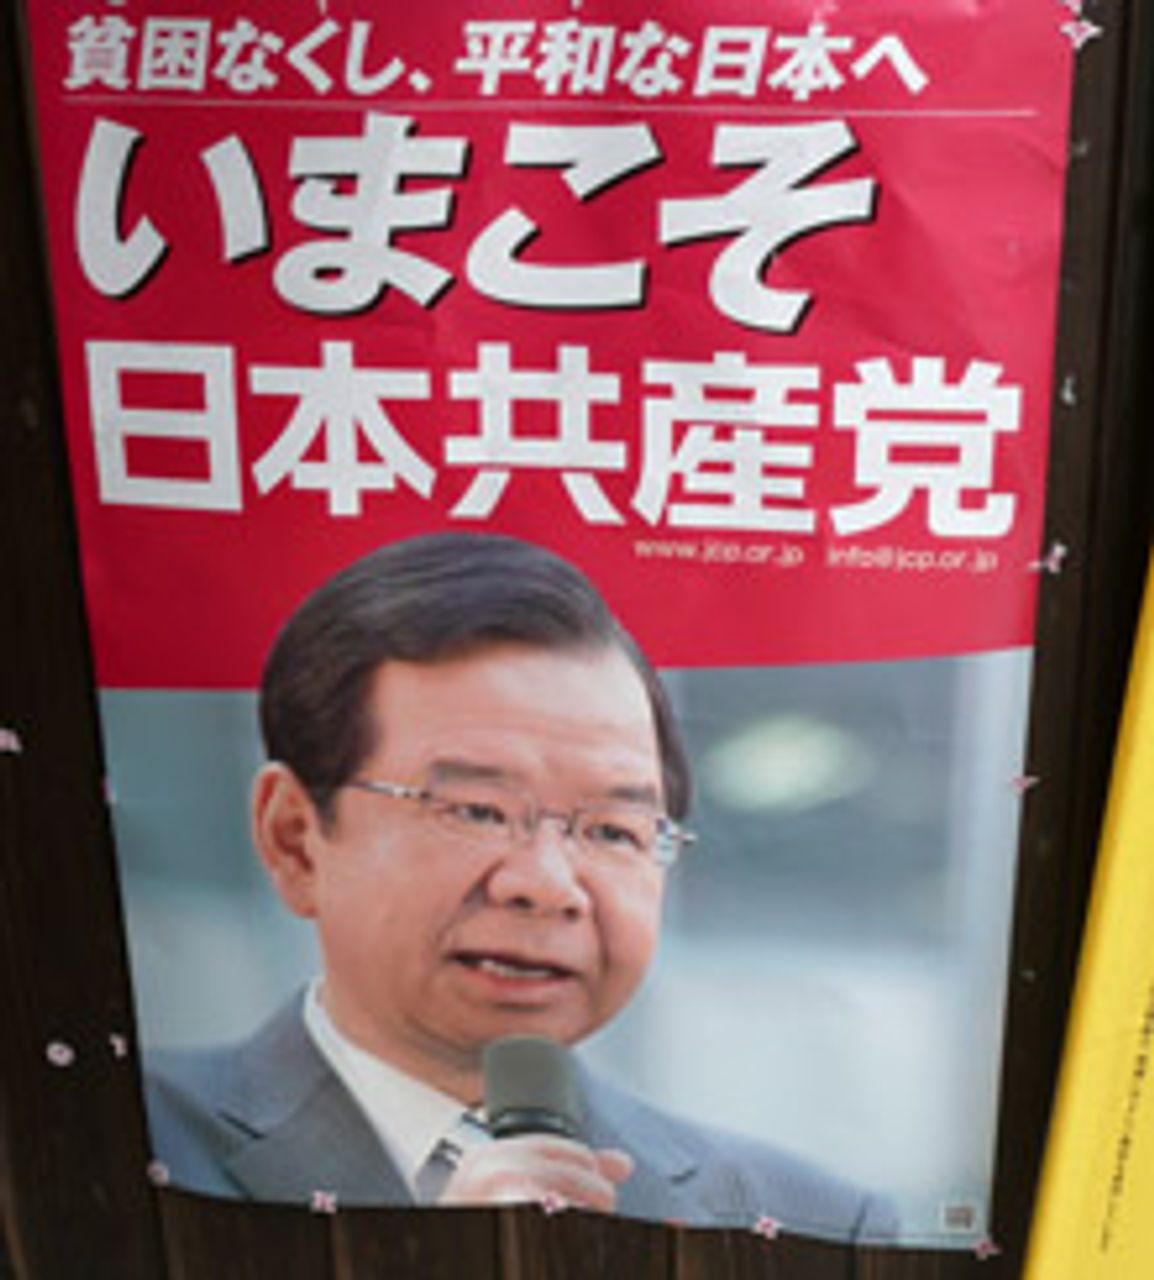 JCP leader Kazuo Shii